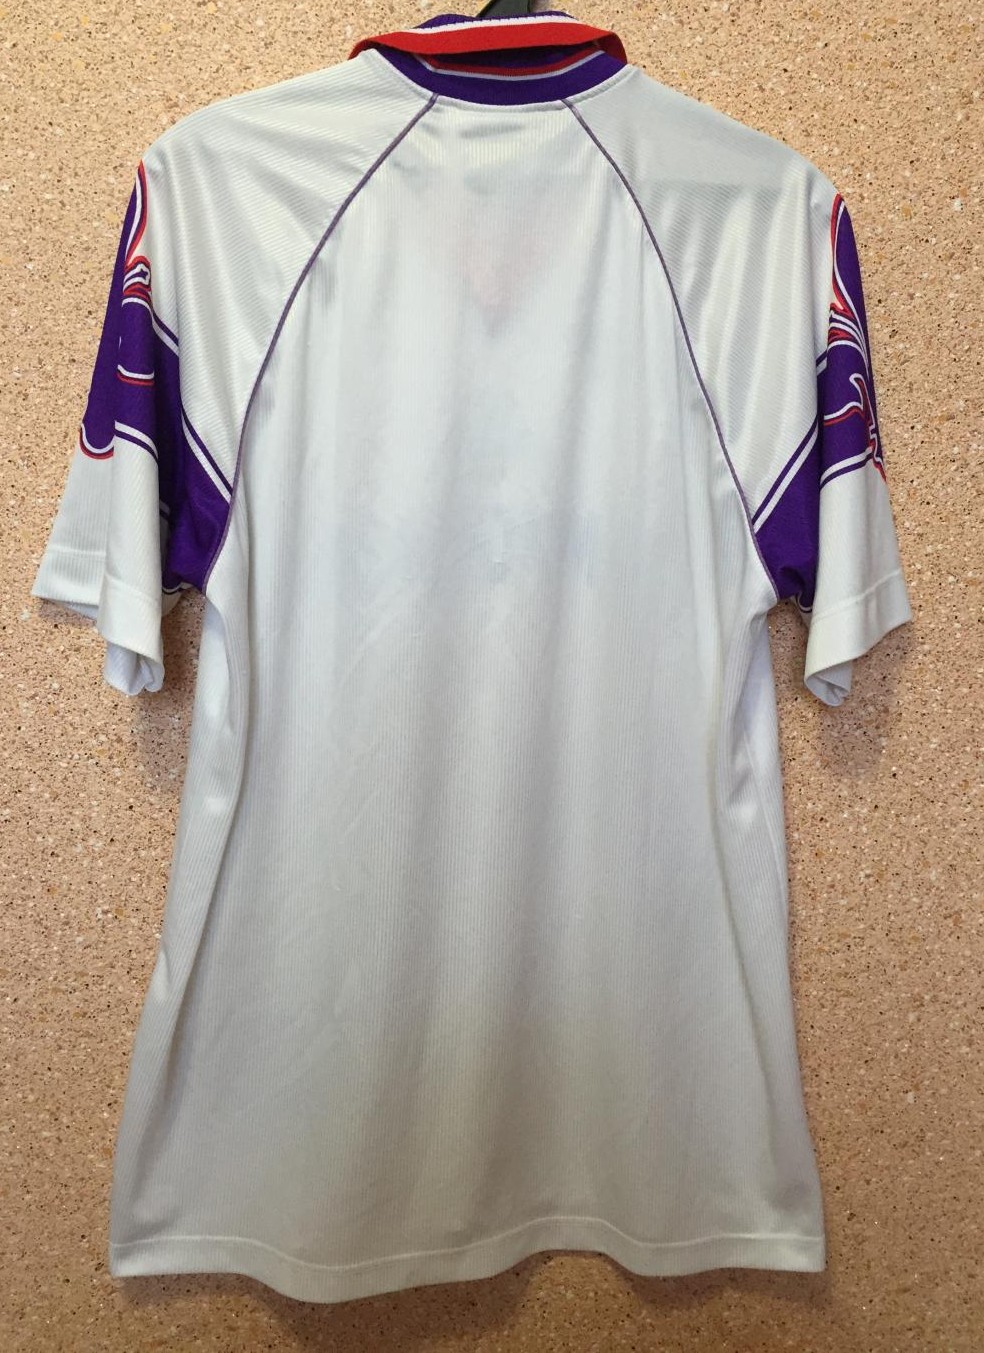 Fiorentina Away football shirt 1995 - 1997. Sponsored by Gelati Sammontana